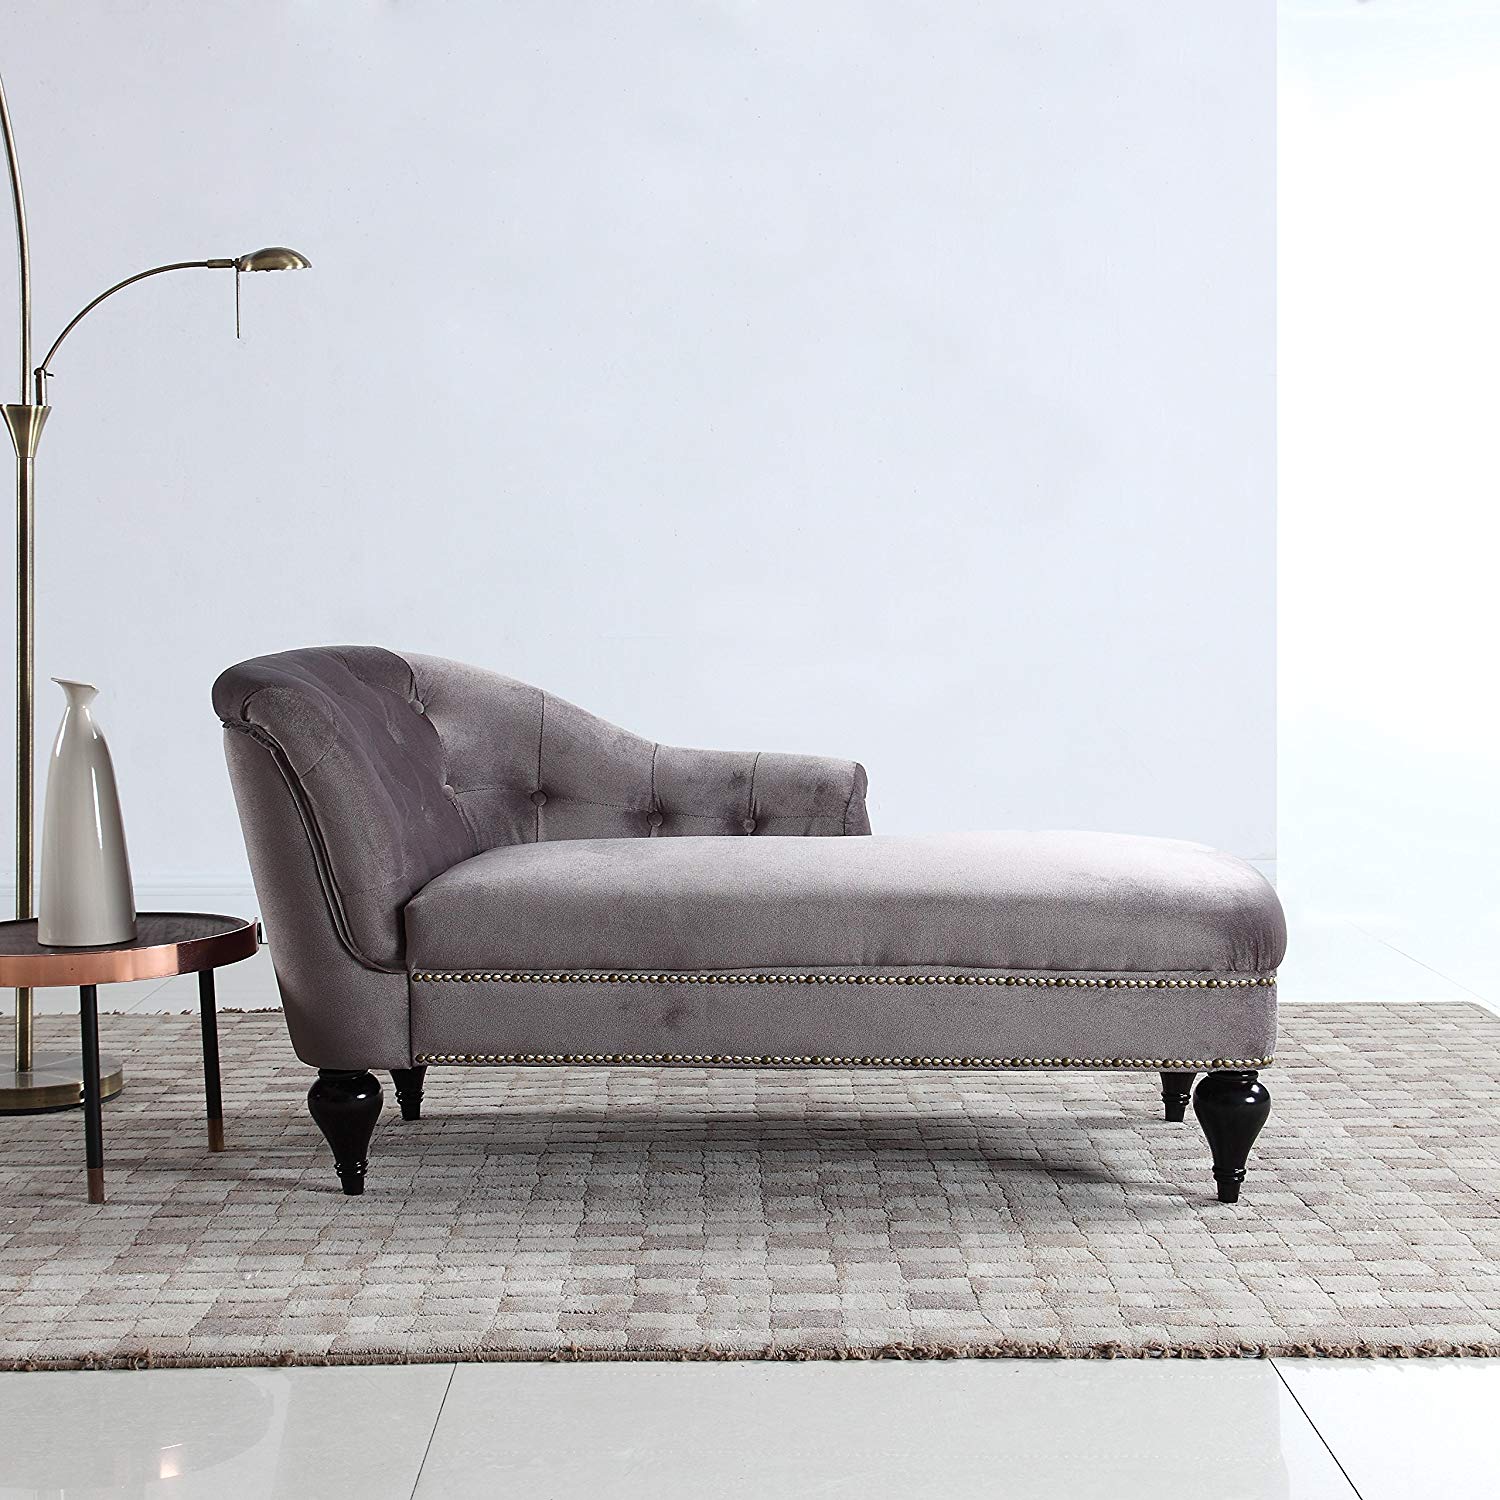 DIVANO ROMA FURNITURE Modern and Elegant Kid's Velvet Chaise Lounge for Living Room or Bedroom (Light Grey)